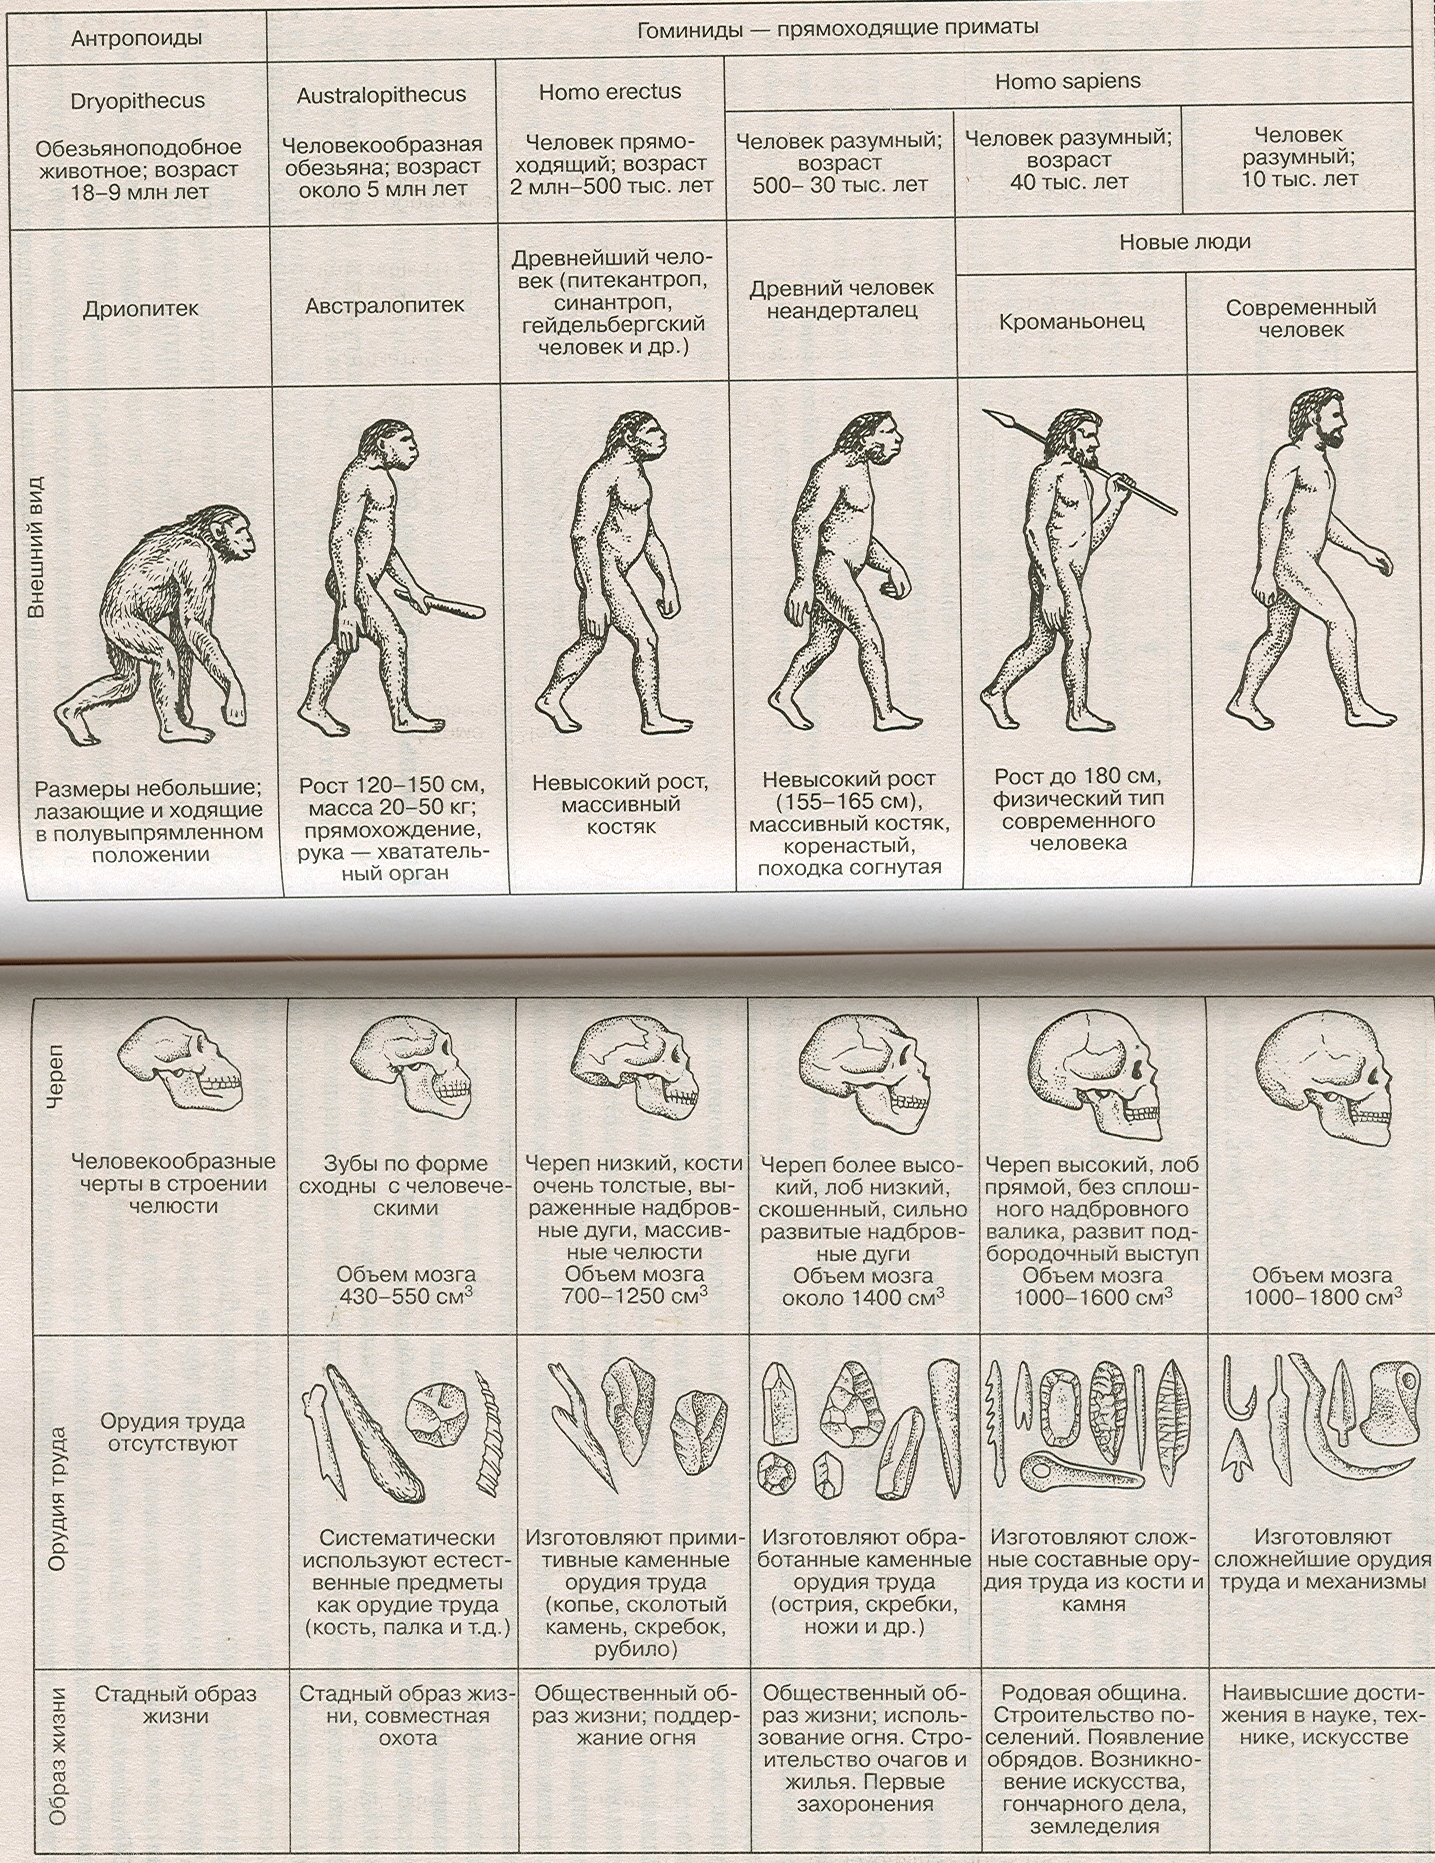 Условием развития человека егэ. Этапы развития человека таблица этапы антропогенеза. Этапы эволюции человека таблица дриопитек. Основные стадии развития человека таблица. Стадия развития человека таблица по биологии.